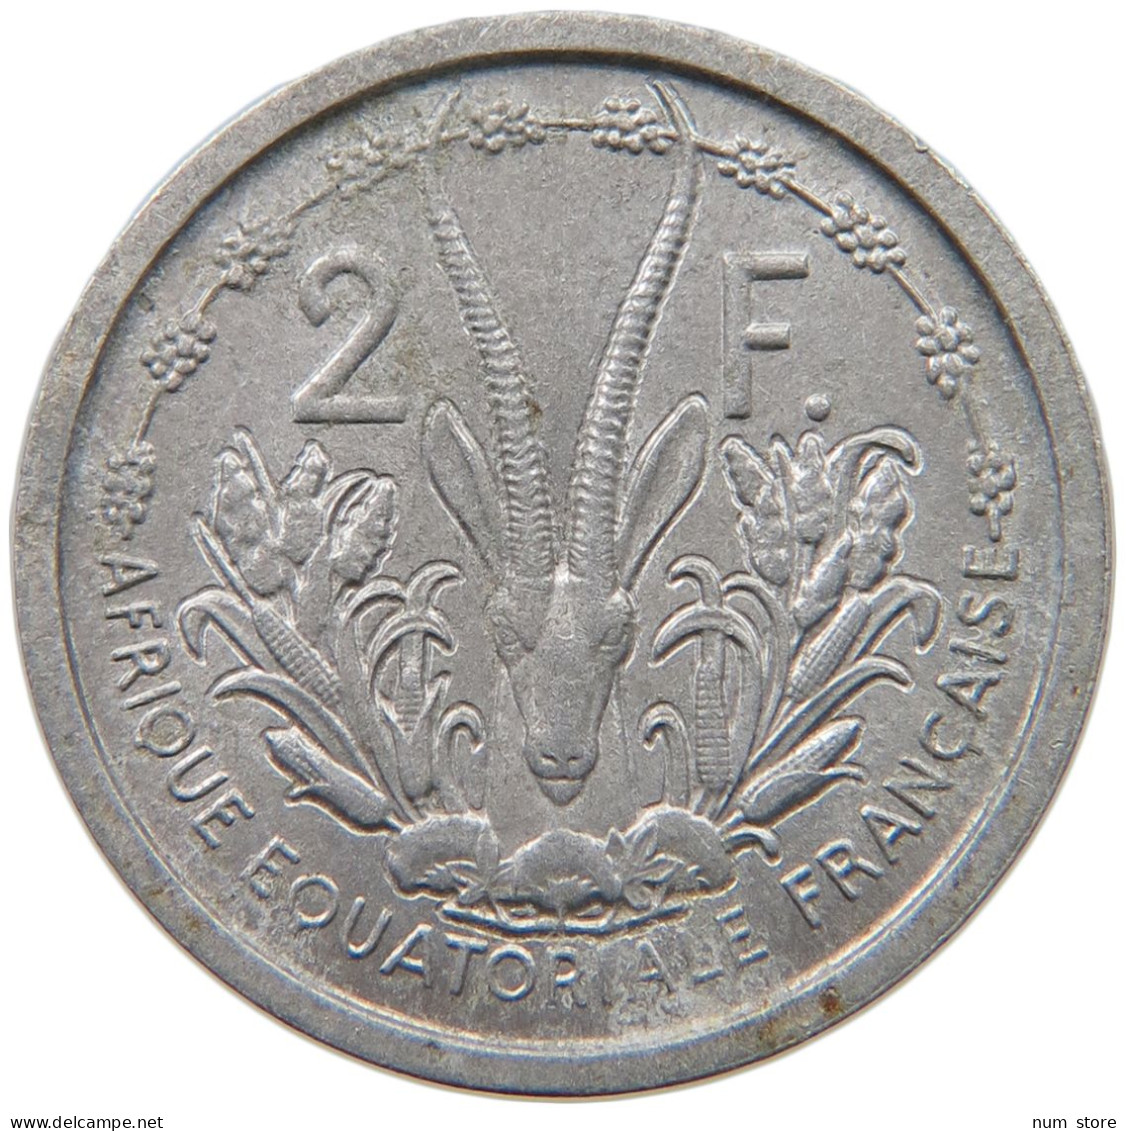 FRENCH EQUATORIAL AFRICA 2 FRANCS 1948  #a051 0517 - Afrique Equatoriale Française (Cameroun)